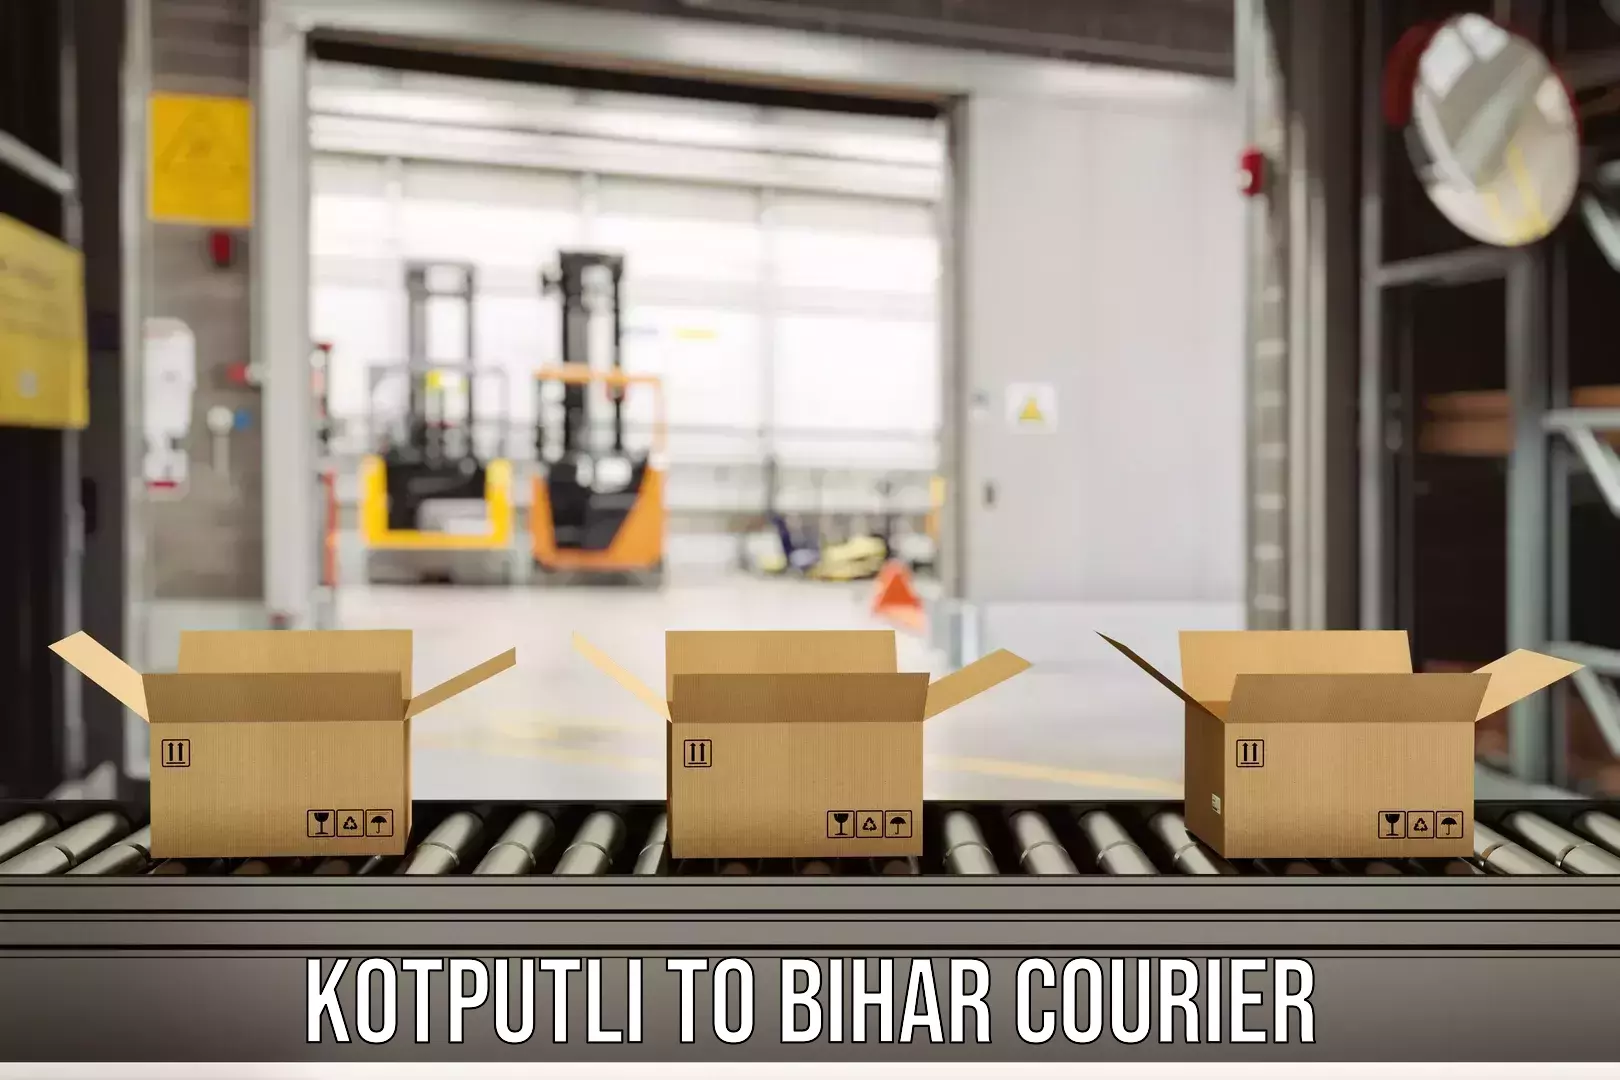 User-friendly delivery service in Kotputli to Bikramganj